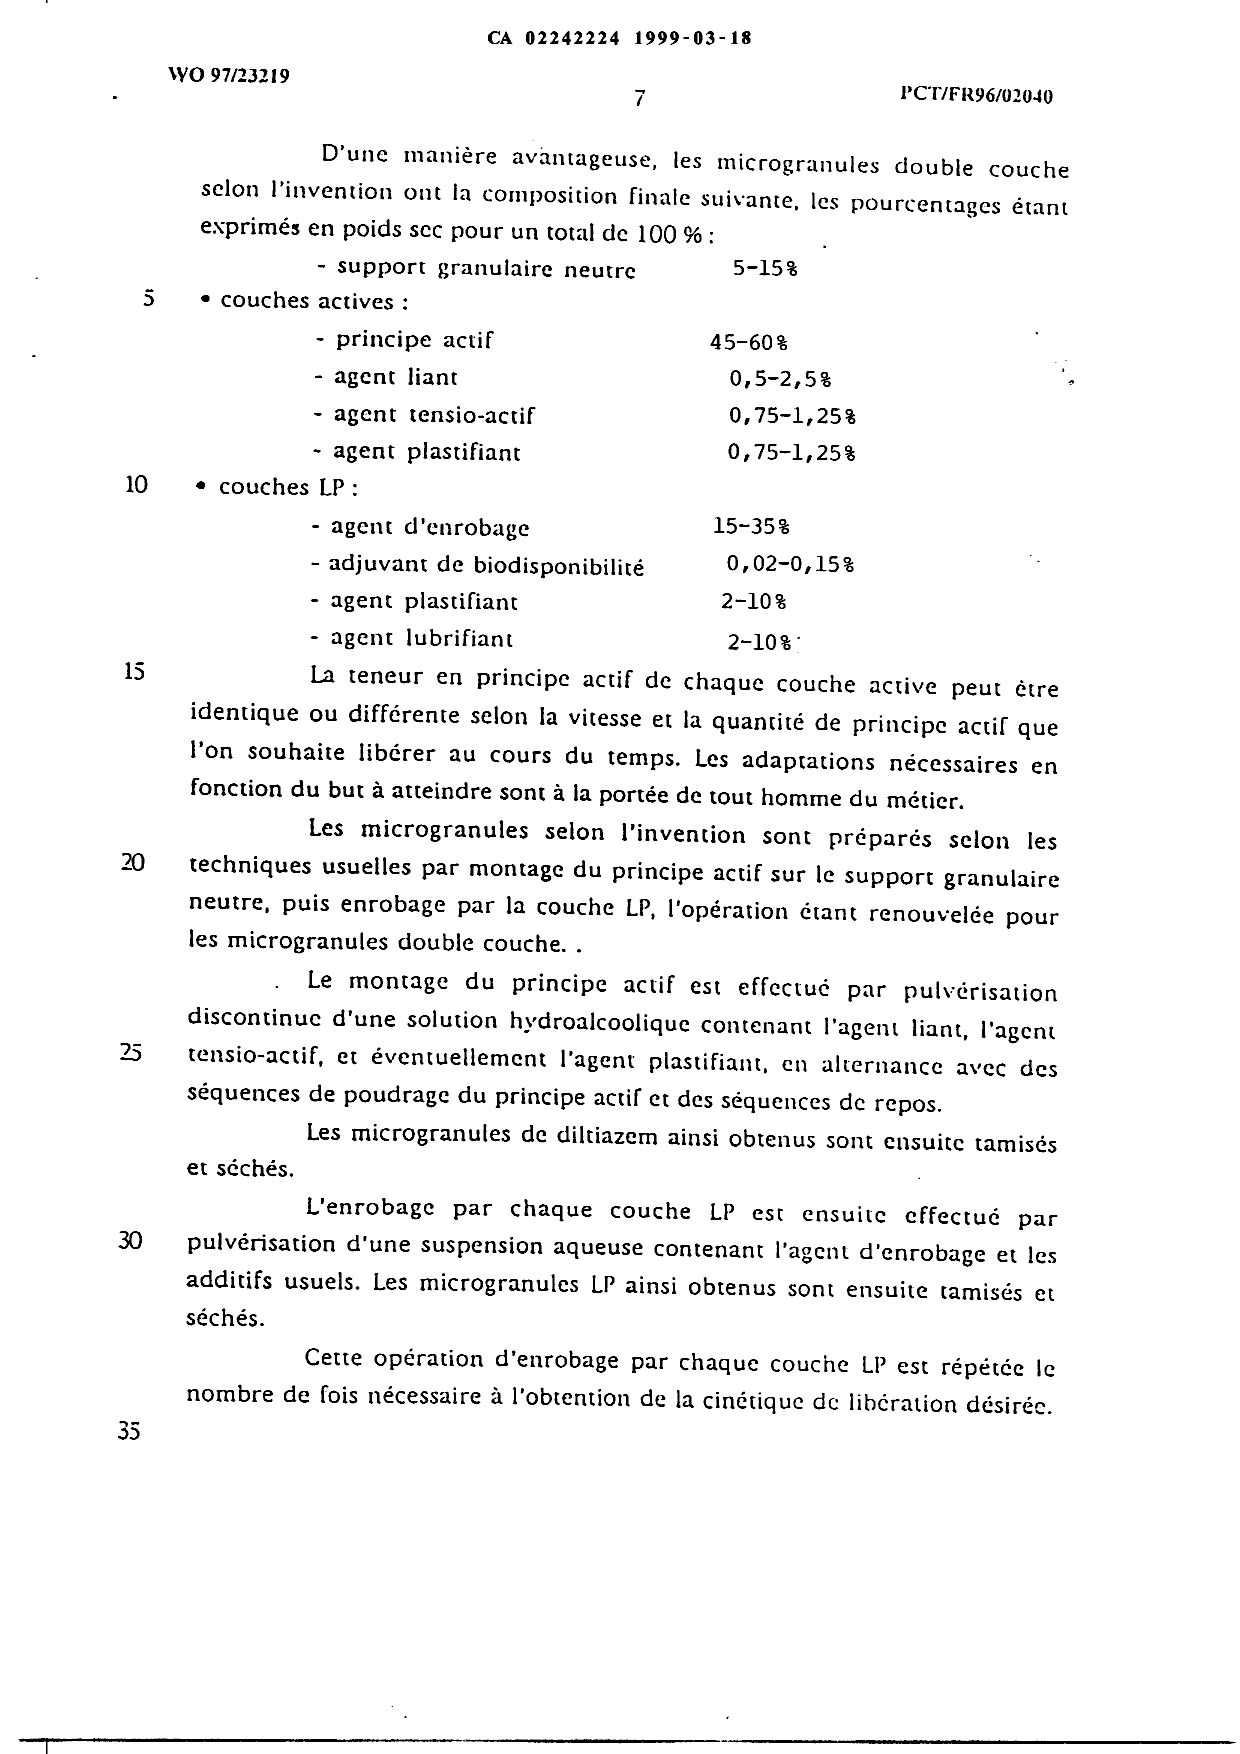 Document de brevet canadien 2242224. Poursuite-Amendment 19981218. Image 3 de 4